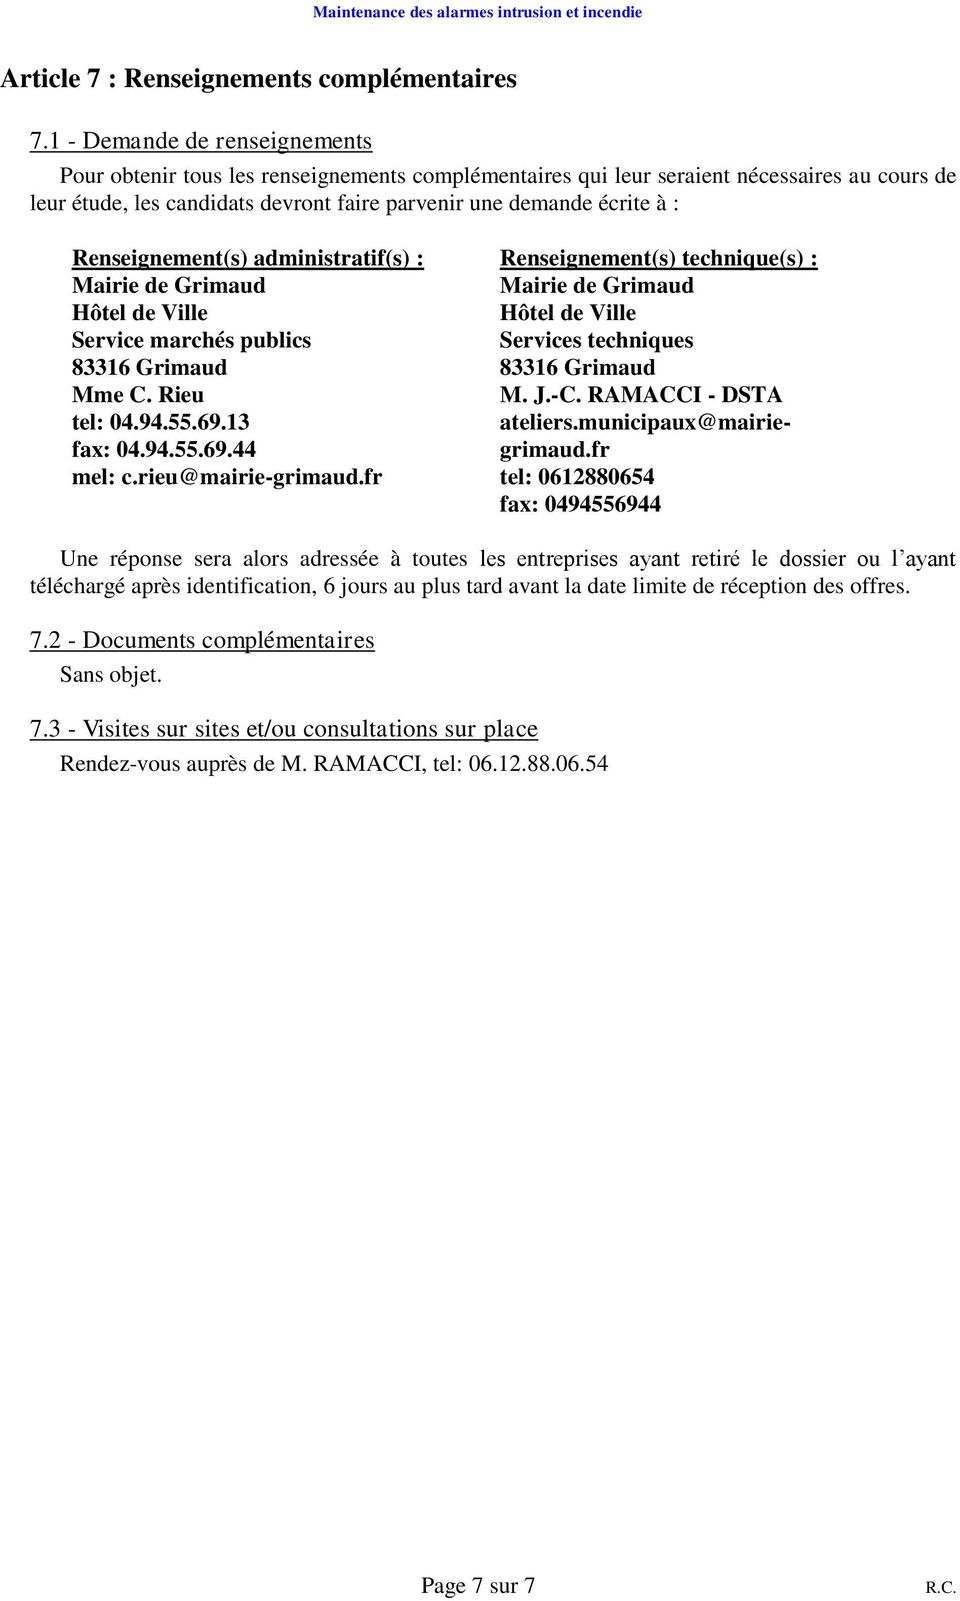 Renseignement(s) administratif(s) : Service marchés publics 83316 Grimaud Mme C. Rieu tel: 04.94.55.69.13 fax: 04.94.55.69.44 mel: c.rieu@mairie-grimaud.